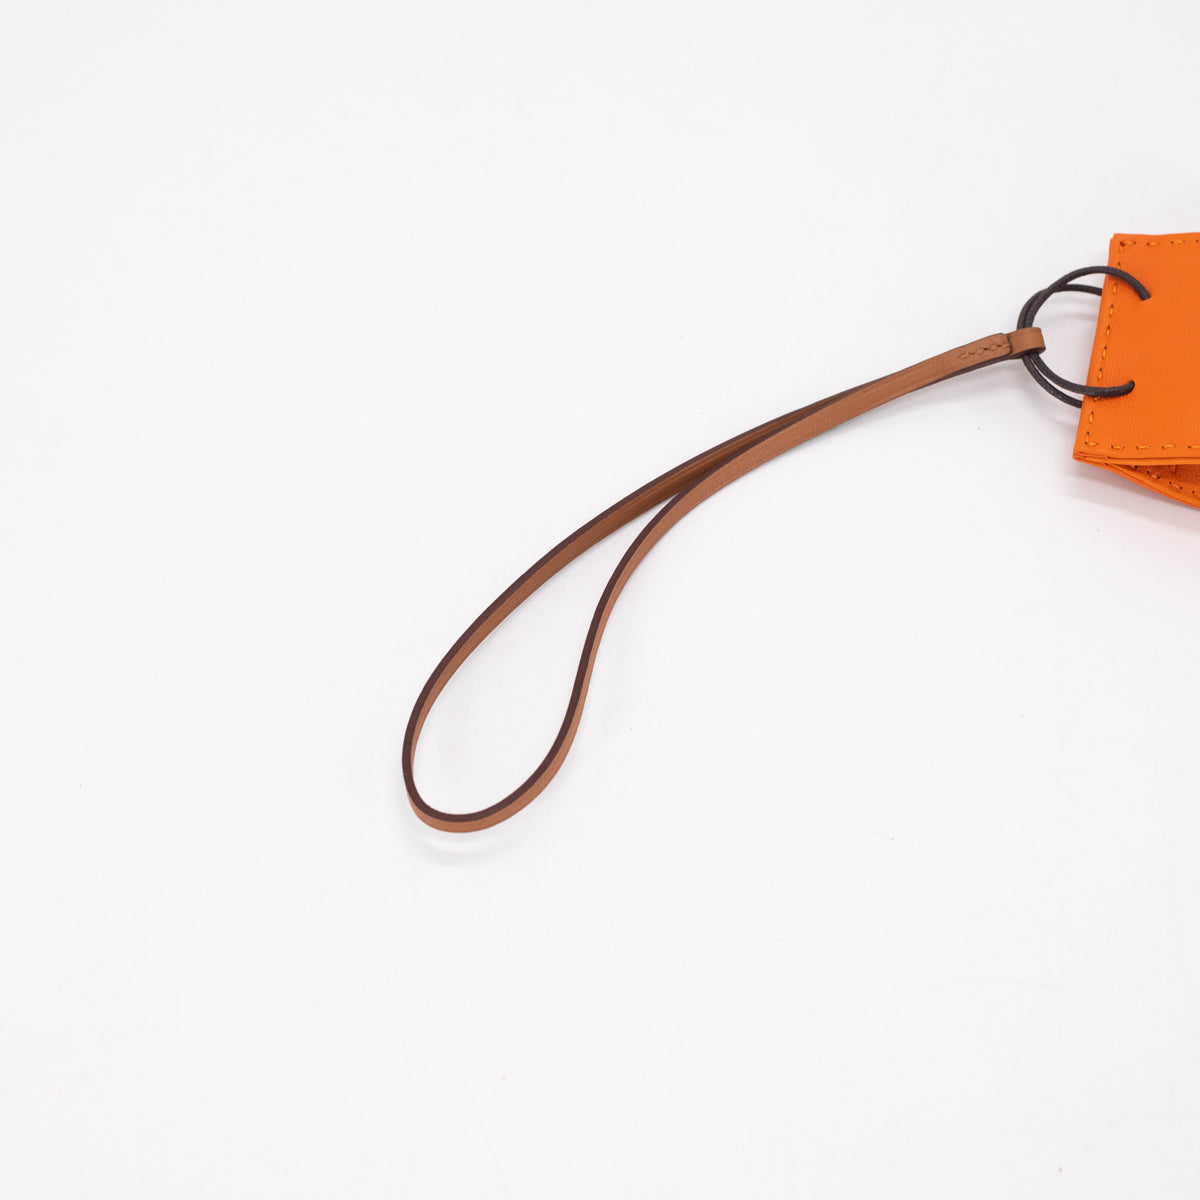 Hermes Orange Bag Charm – The Orange Box PH